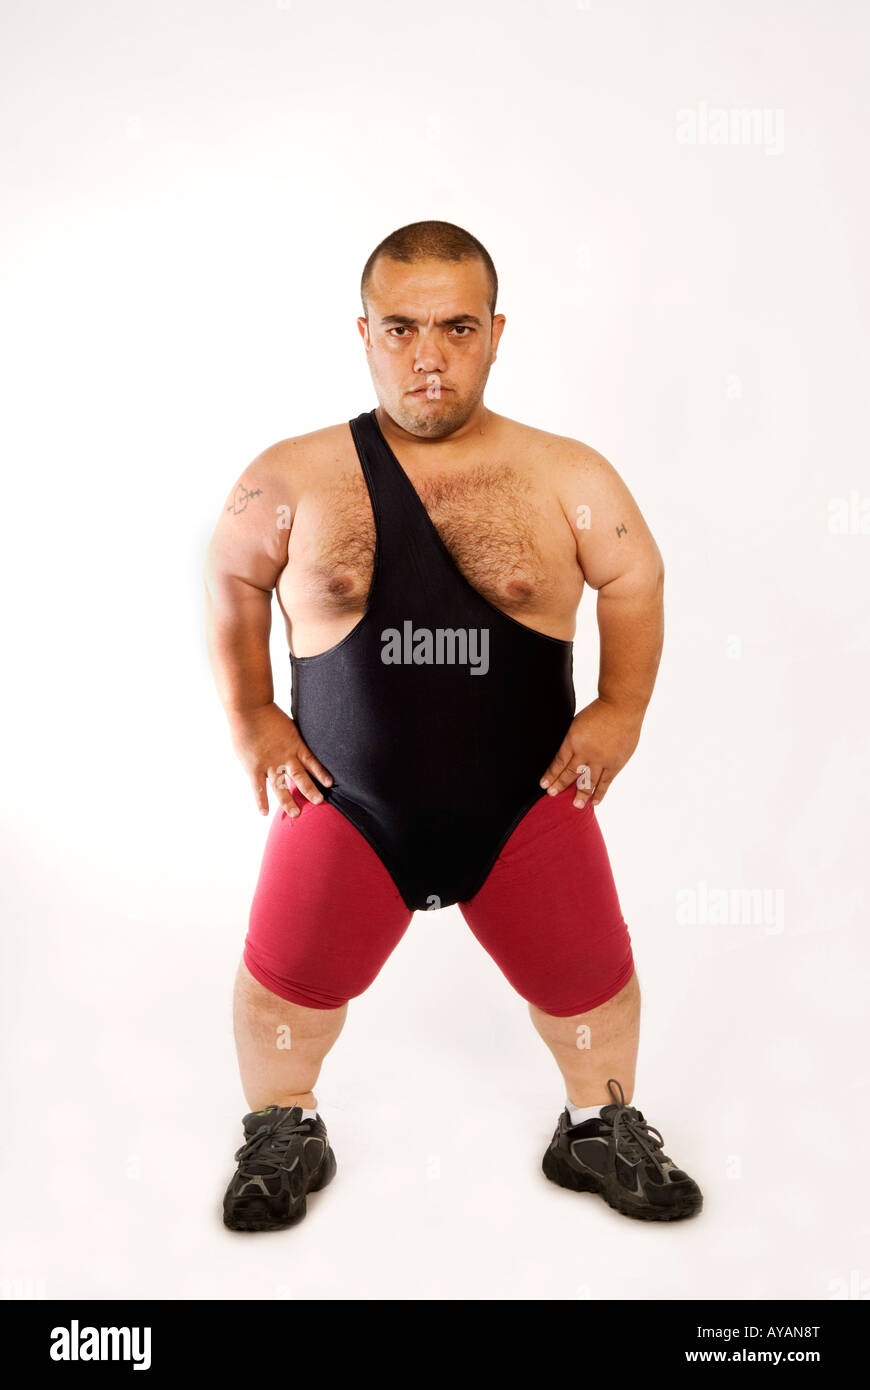 Full Length Midget Wrestler In Wrestling Outfit Posing Stock Photo Alamy